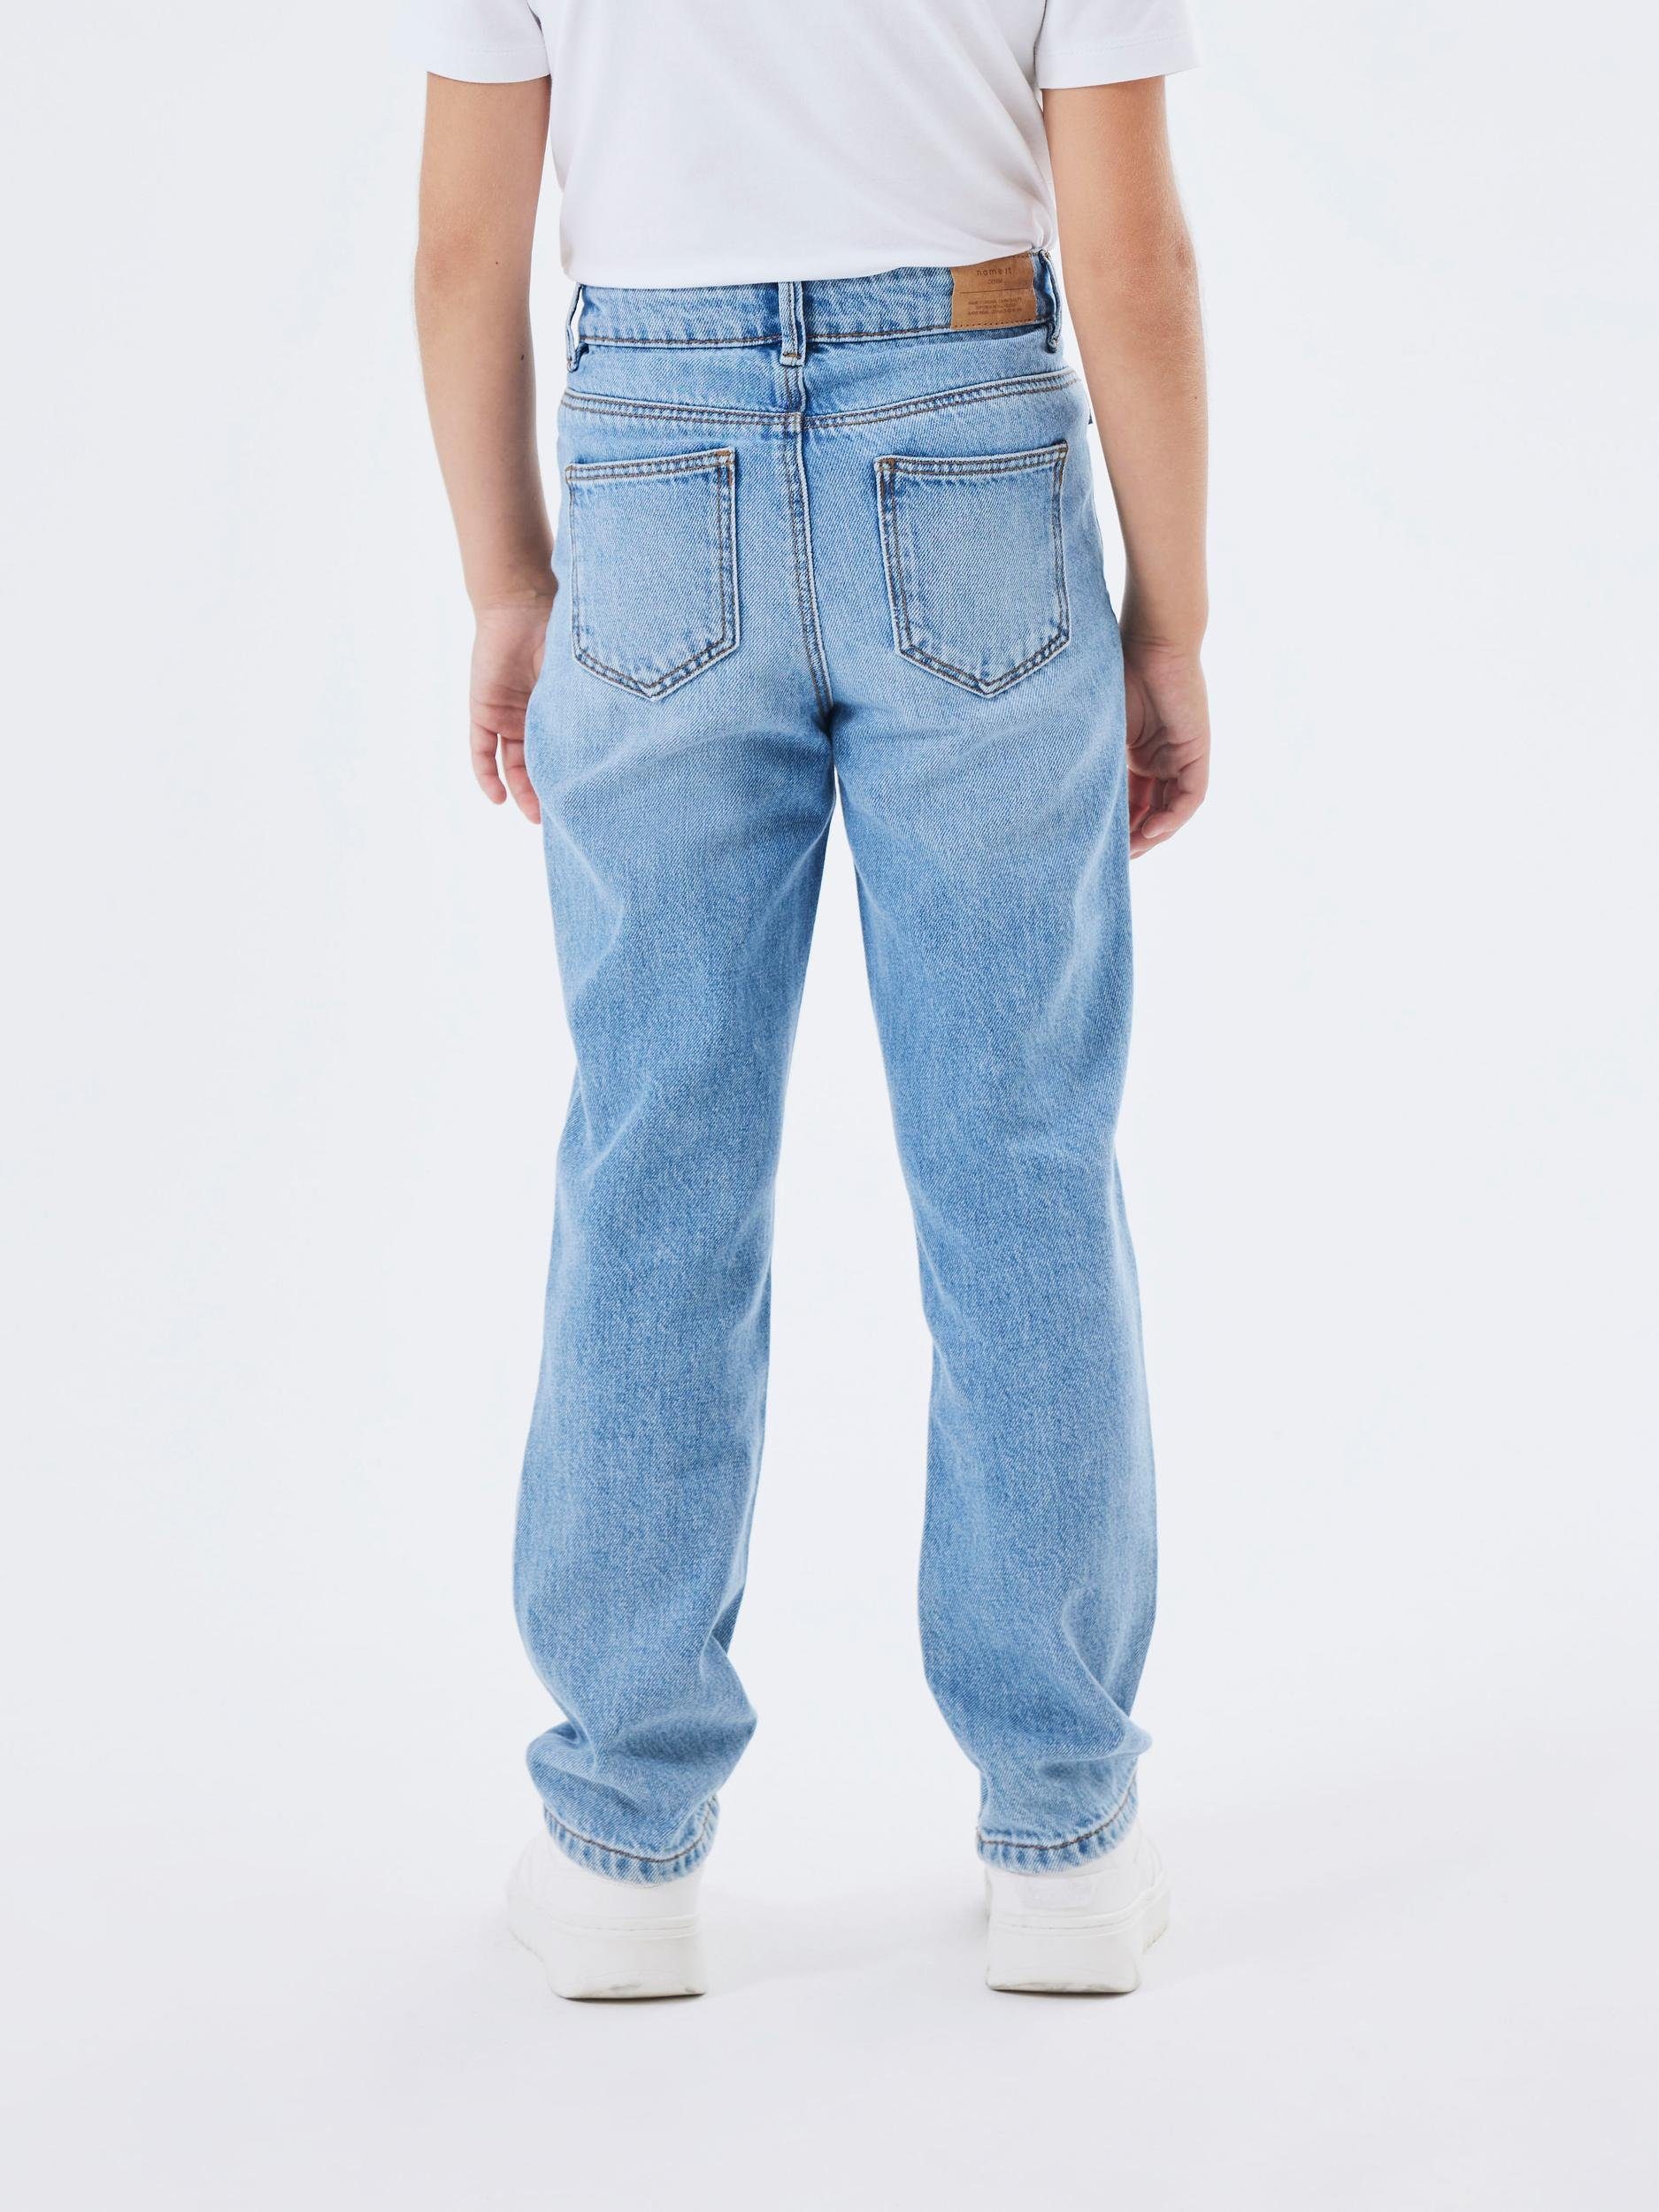 NOOS, NKFROSE jeden 9222-BE passt Straight-Jeans in HW Name JEANS It Kleiderschrank kombinierbar, Einfach STRAIGHT